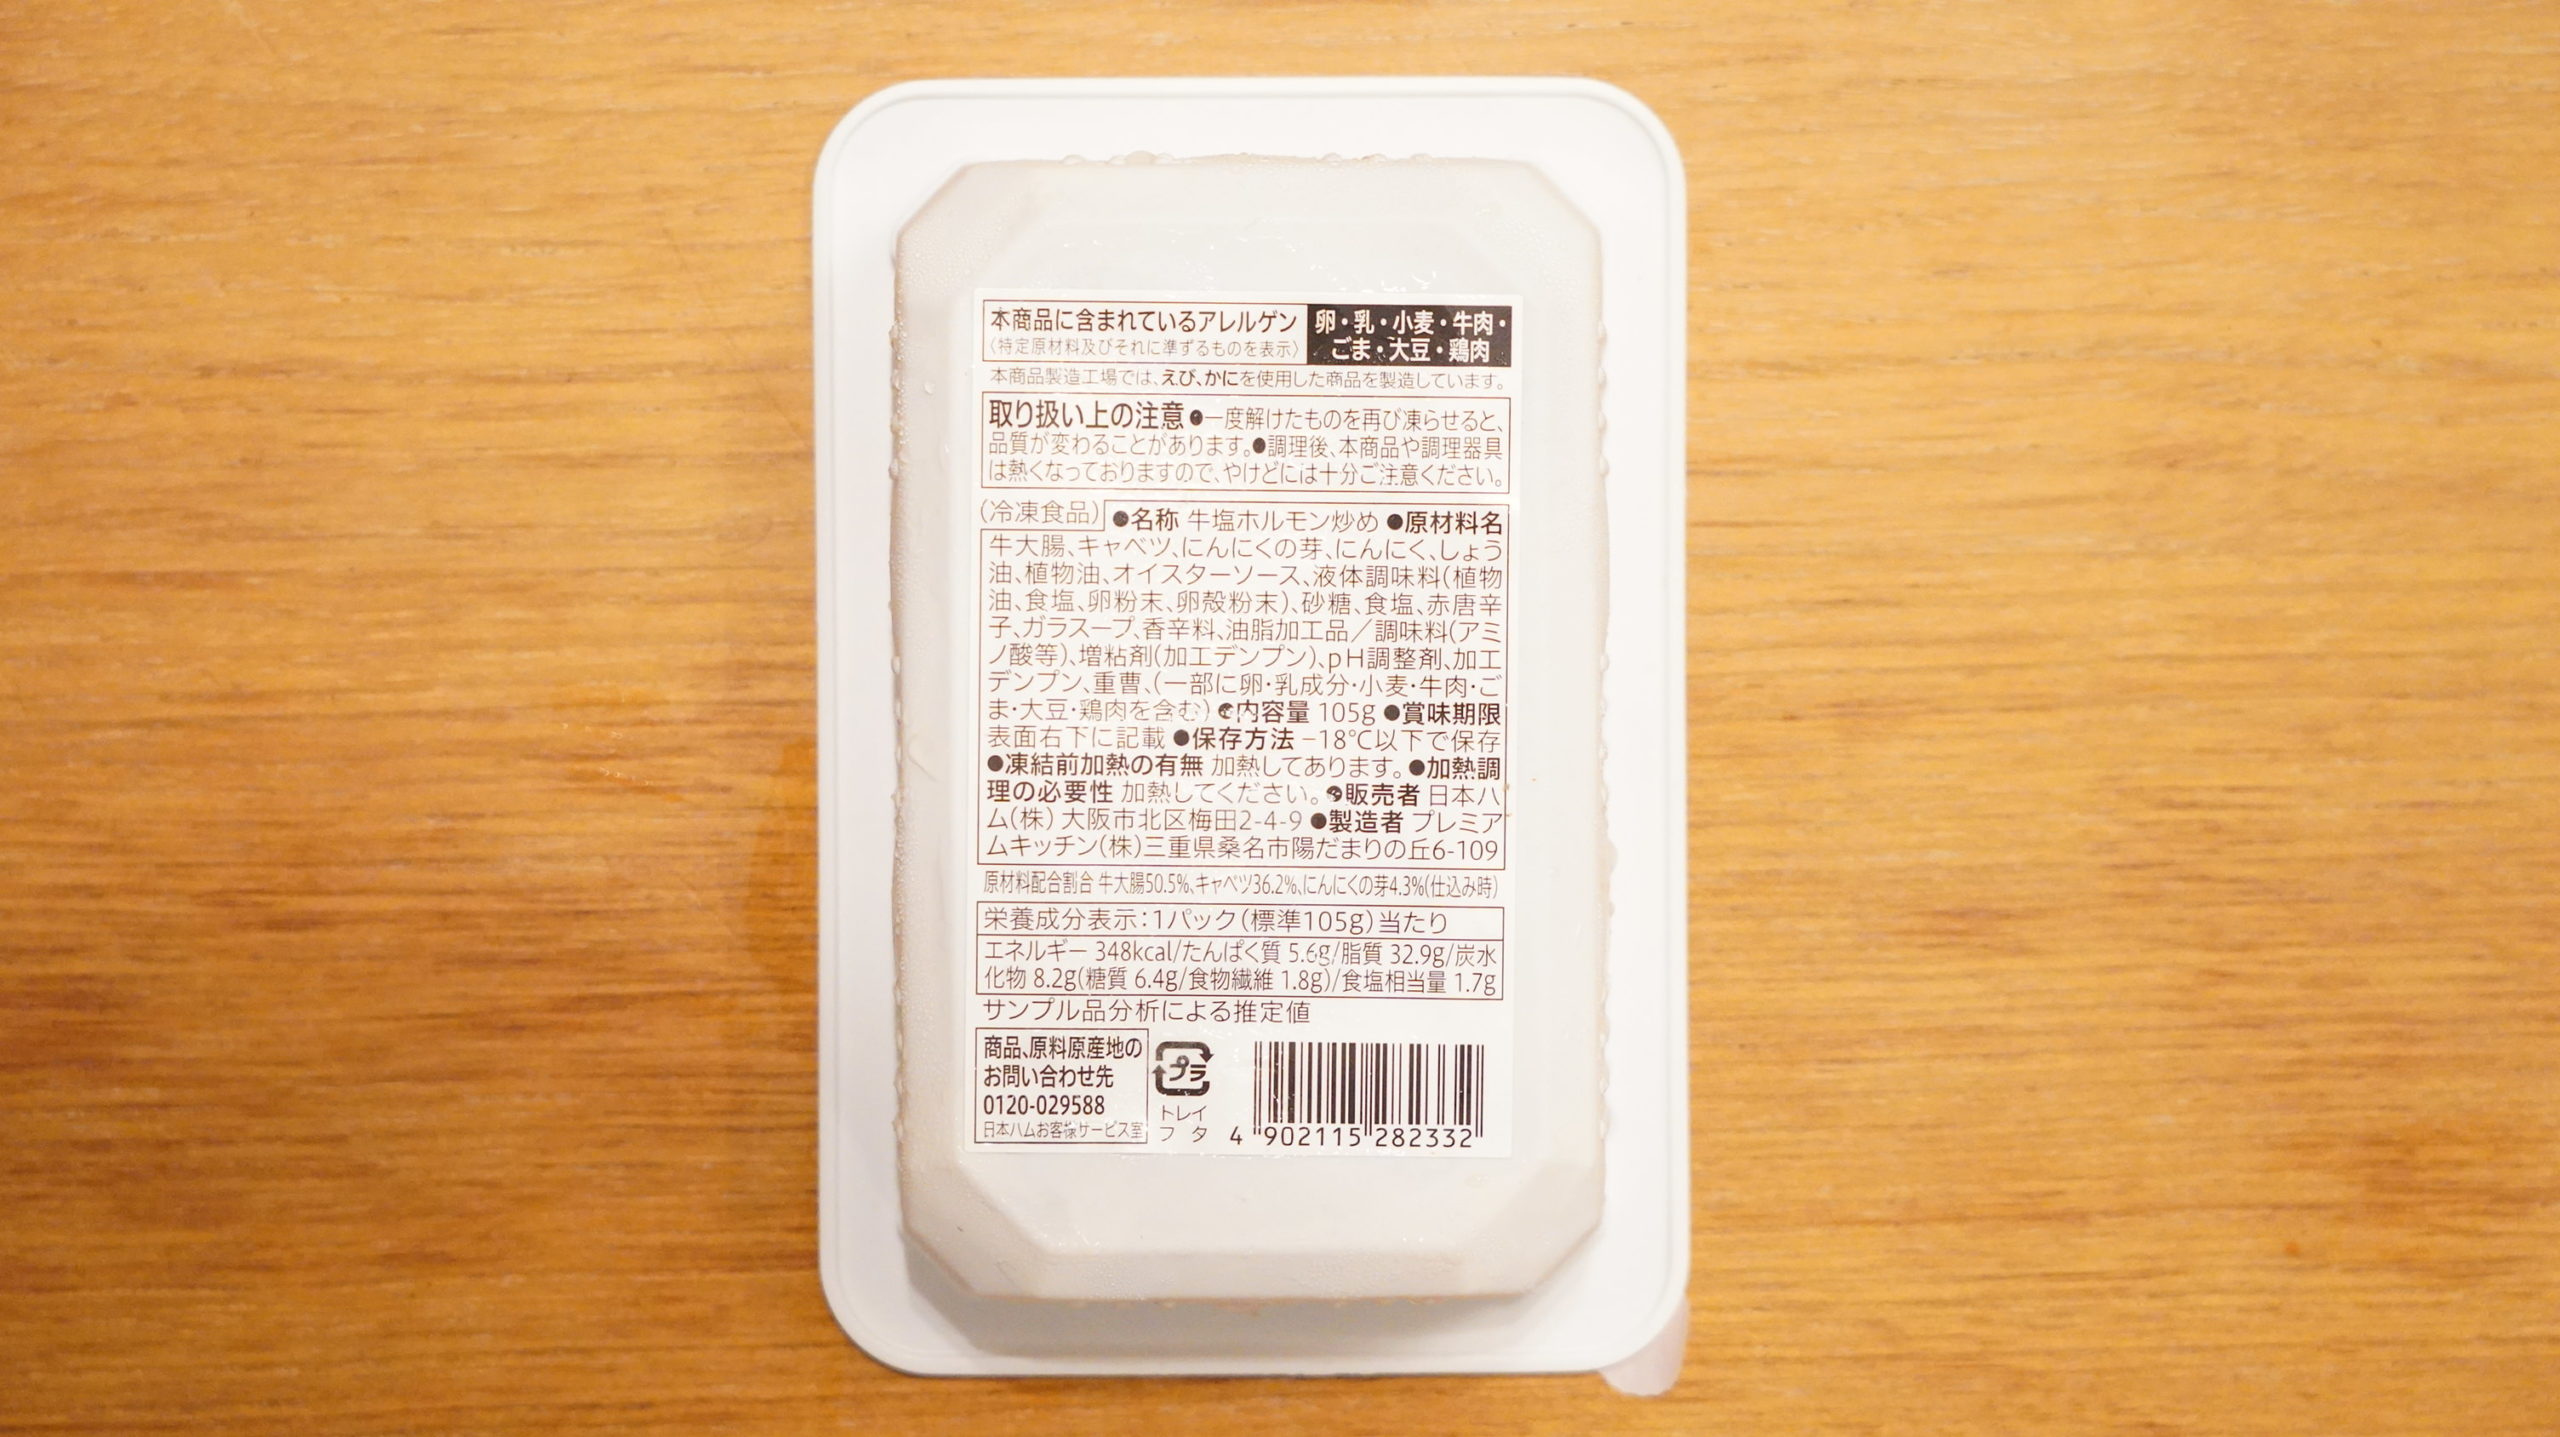 セブンイレブンの冷凍食品「キャベツとにんにくの芽入・牛塩ホルモン炒め」のパッケージ裏面の写真